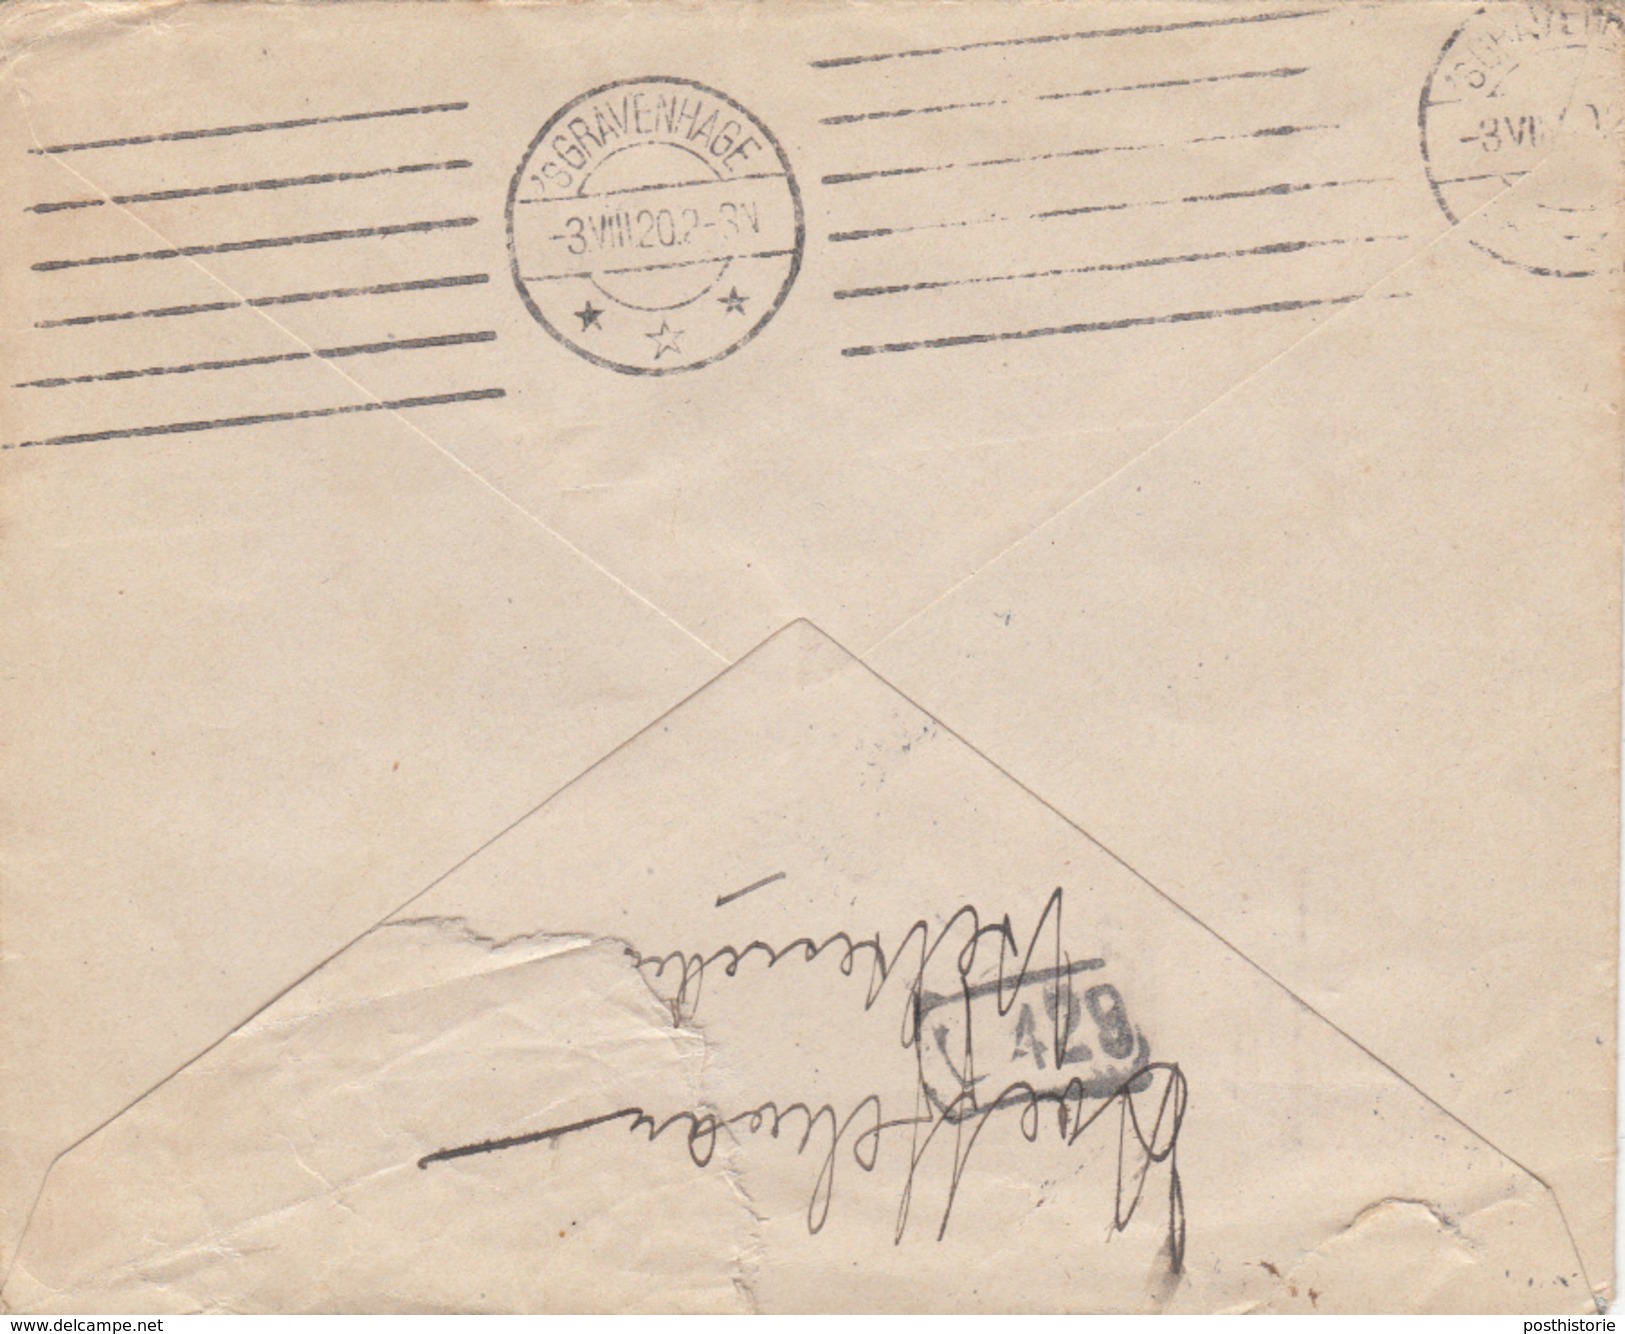 Envelop Postwaarde 10 Cent 29 Jun 1920 Weltevreden Naar 's Gravenhage Per SS Willis 1 Juli 1920 - Niederländisch-Indien